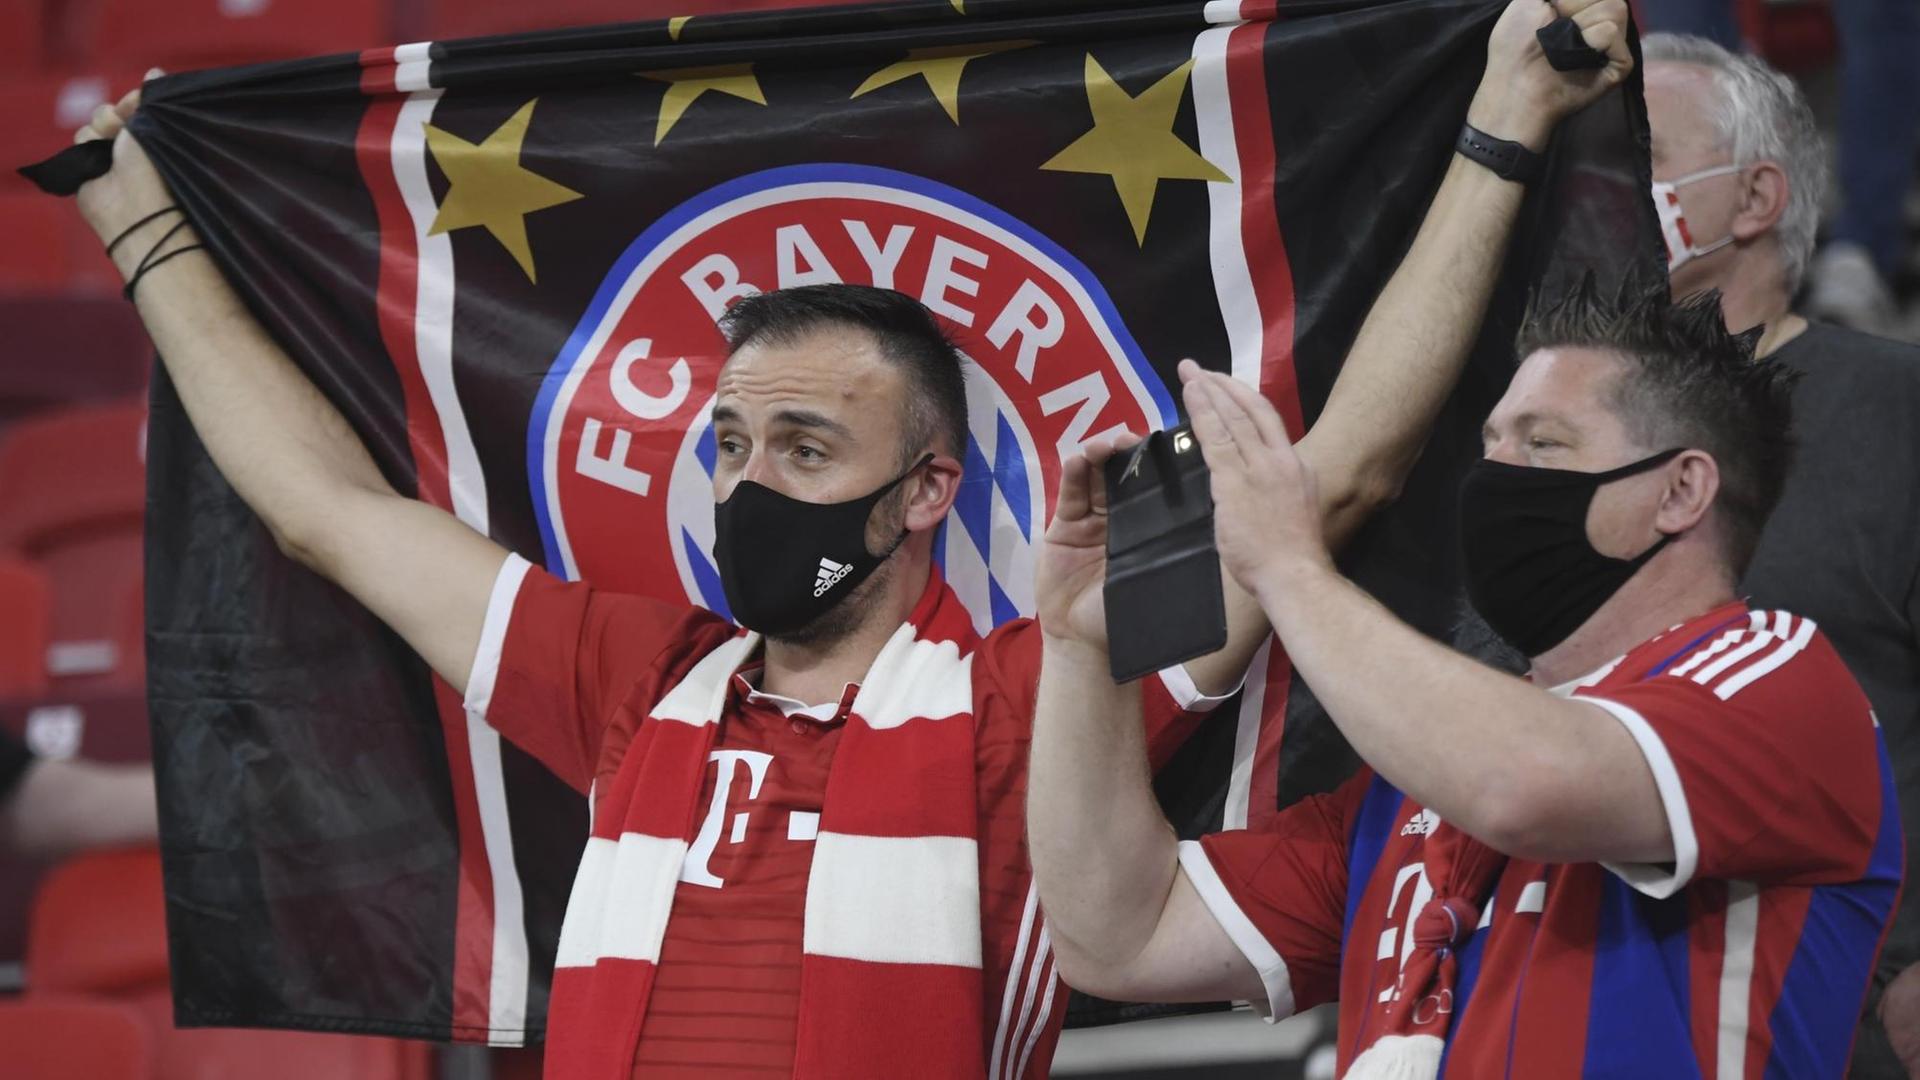 Fans von Bayern München stehen auf der Tribüne.